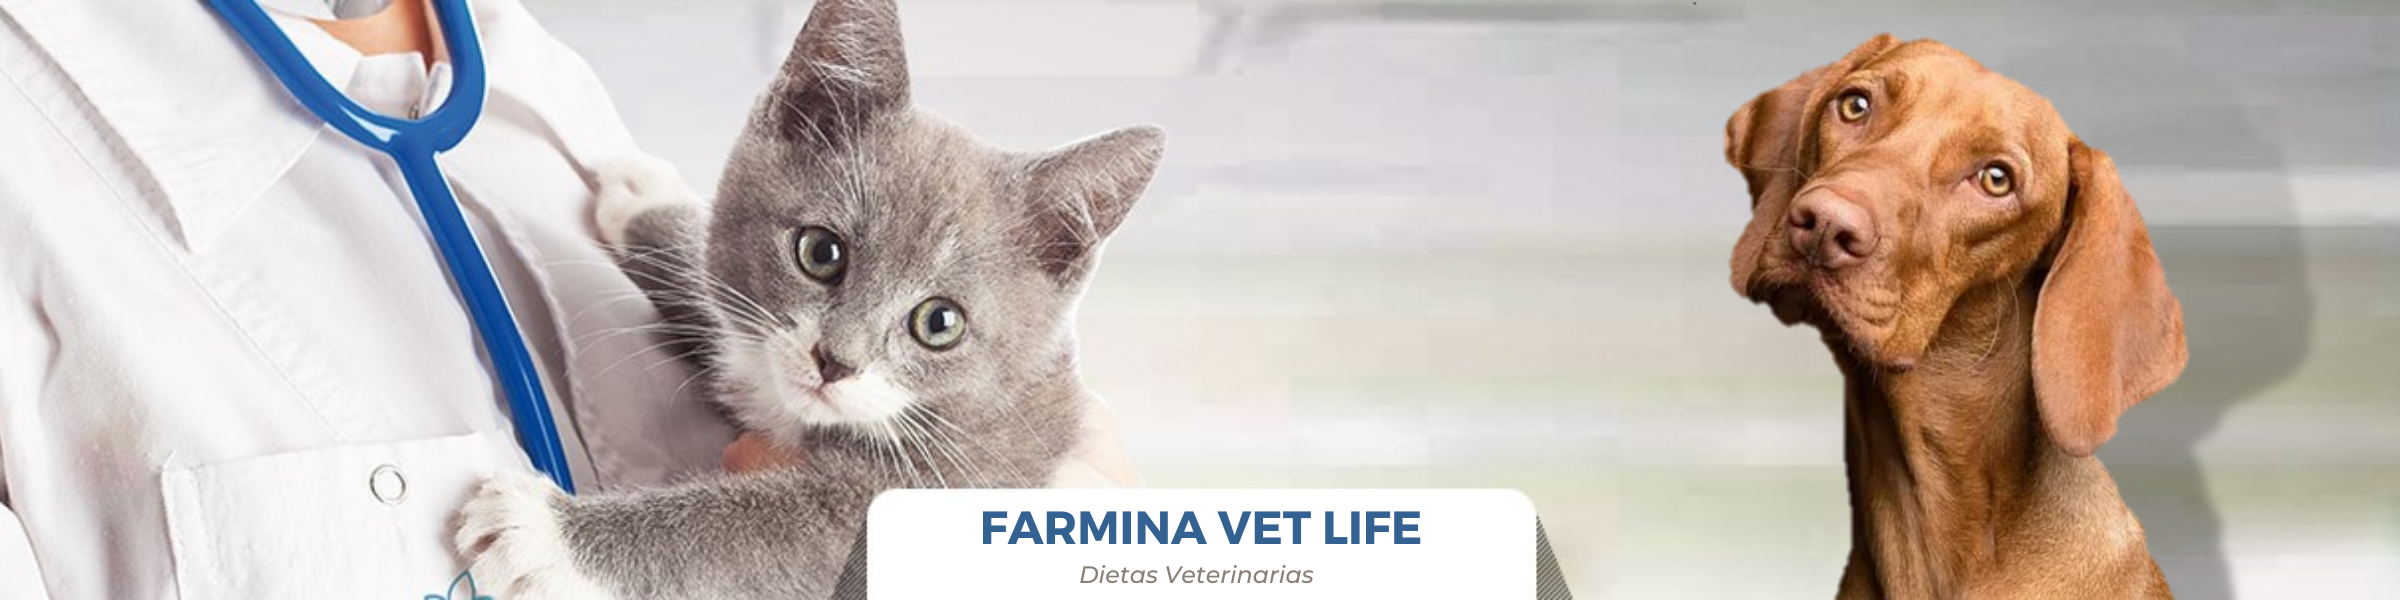 Gama VET LIFE - Dietas Veterinarias Farmina para perros y gatos